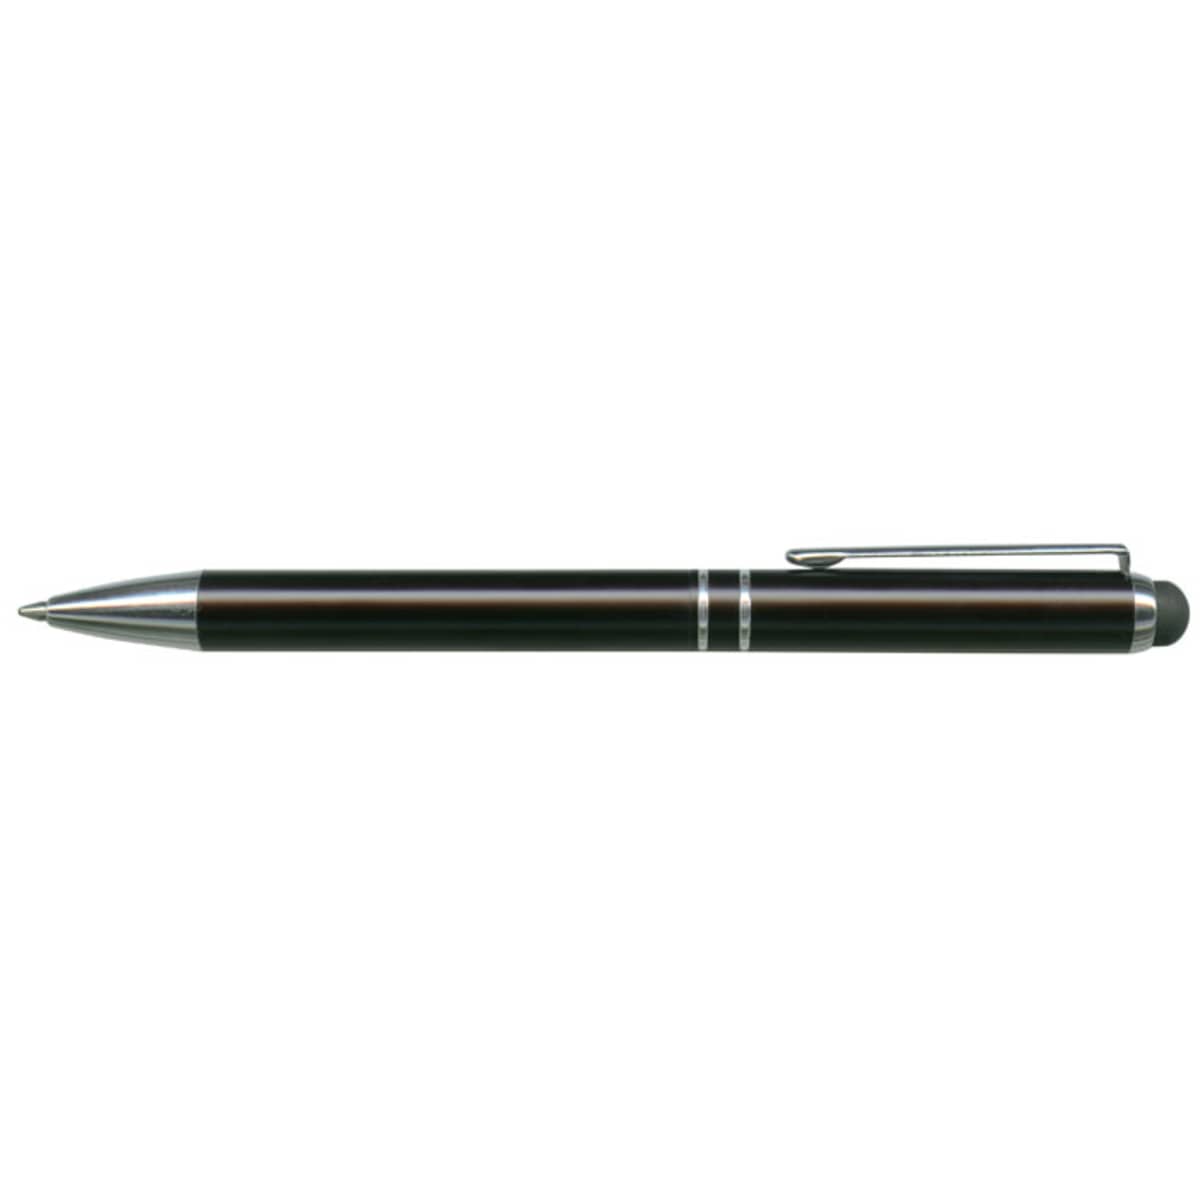 Bermuda Stylus Pen